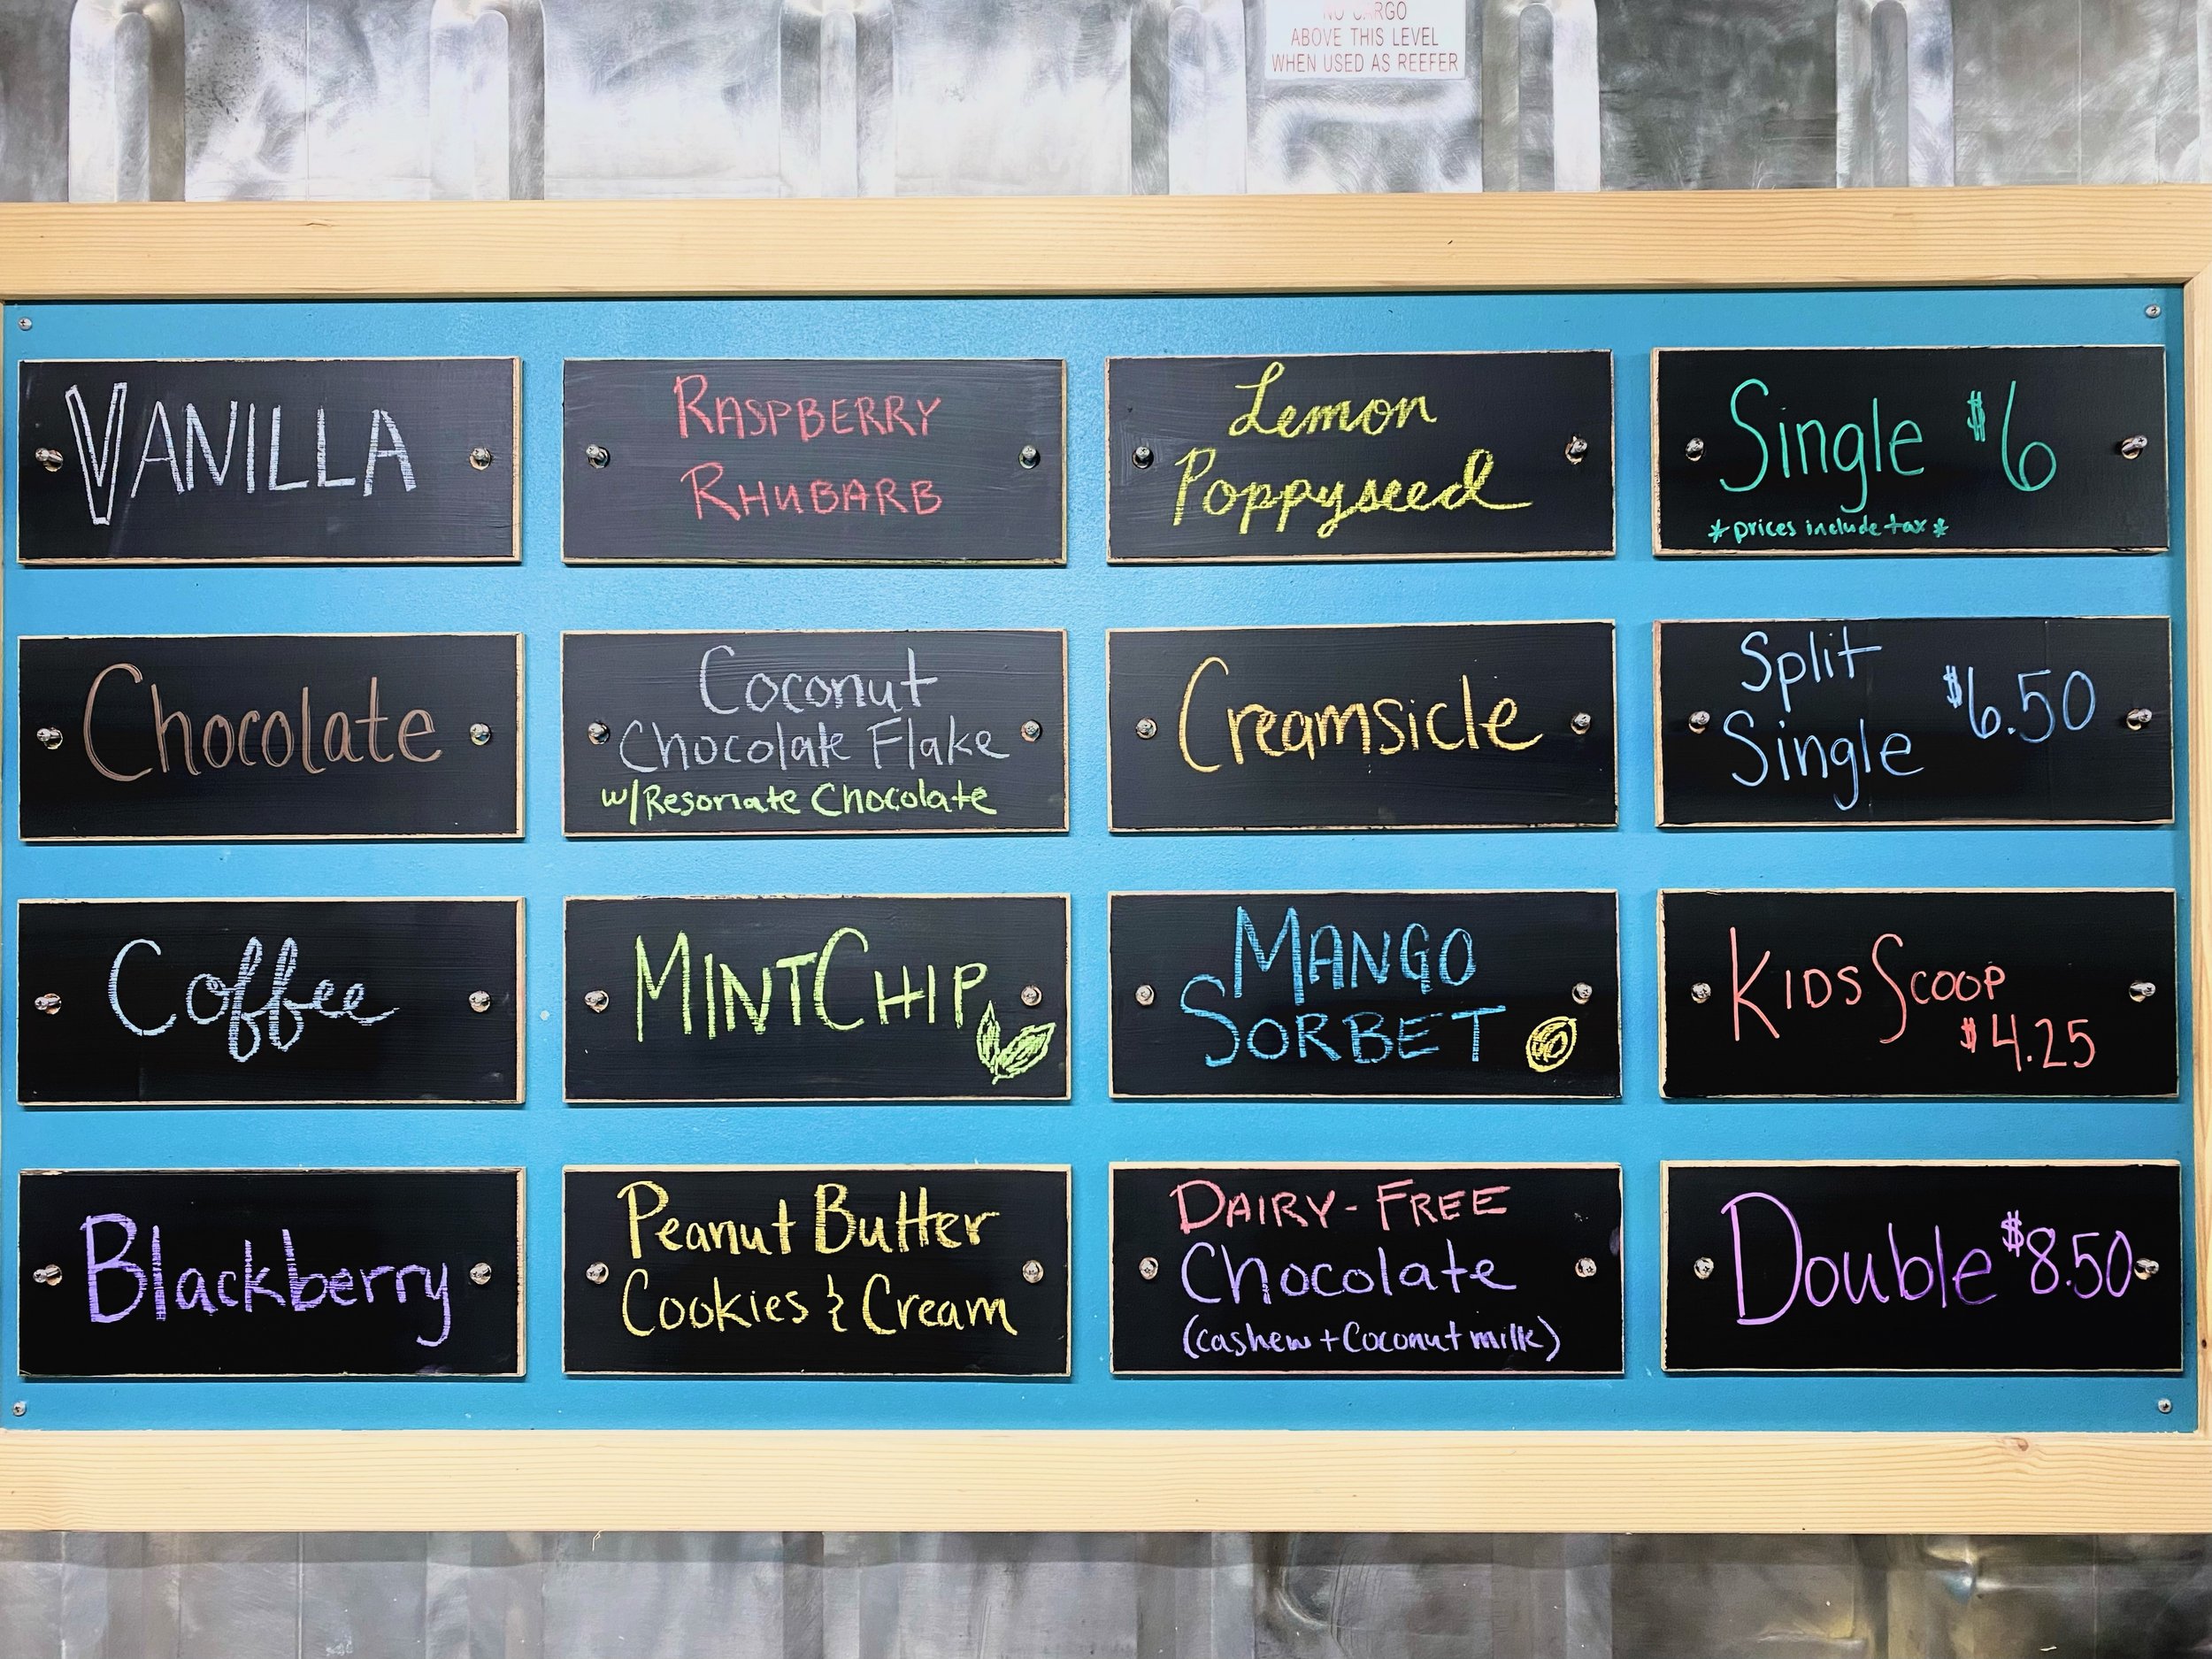 Ice cream flavor options